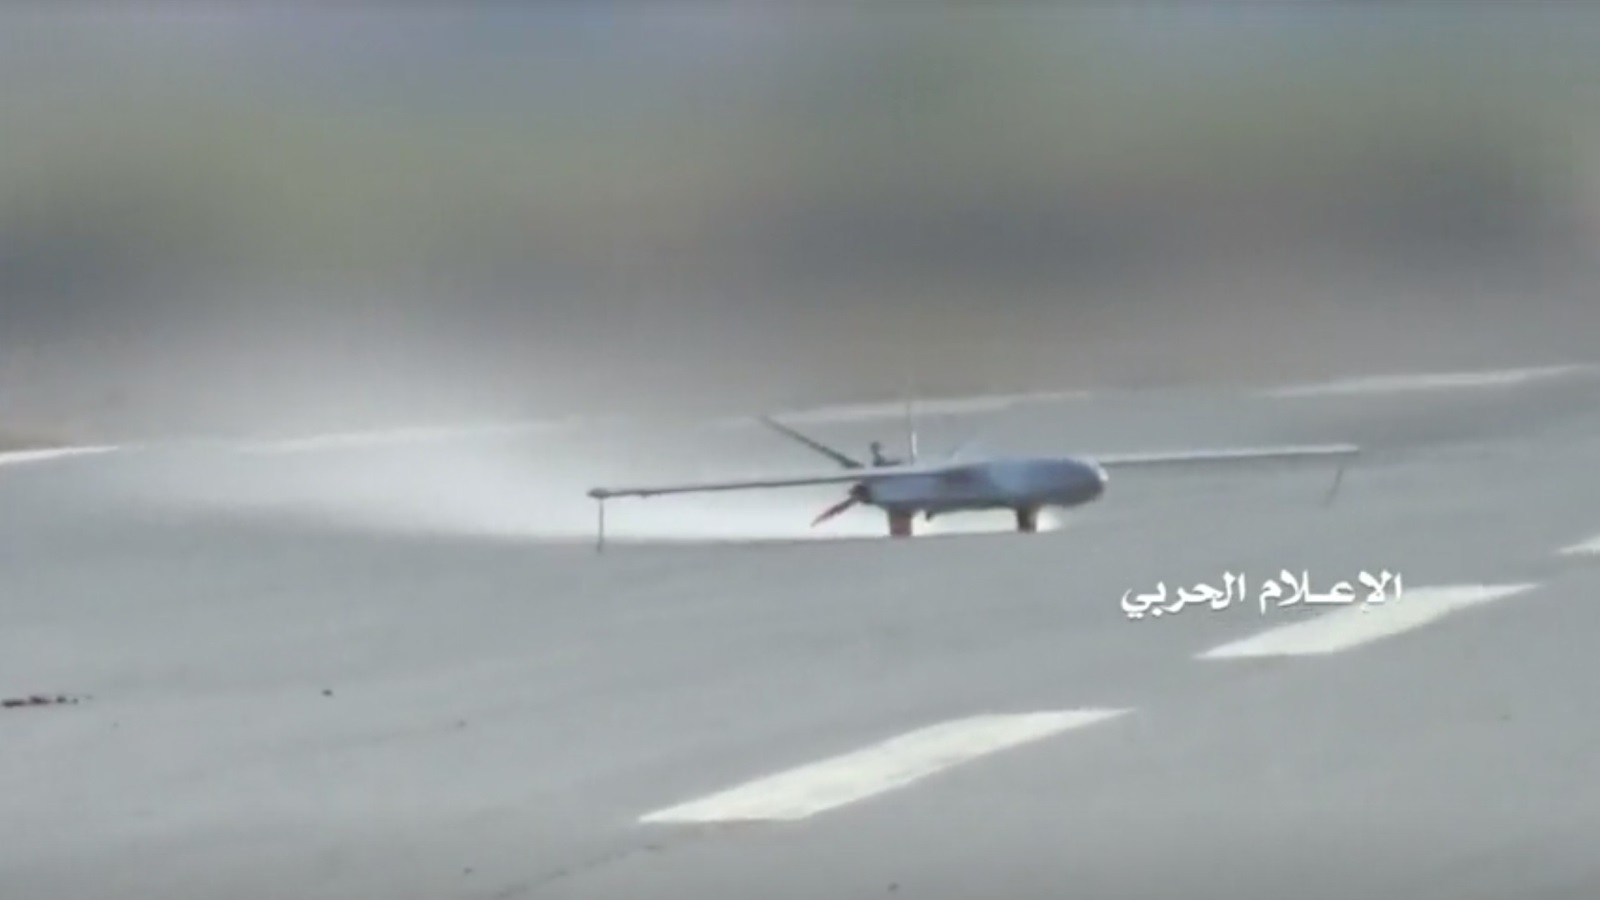 جماعة الحوثي هاجمت منشآت نفطية في الشيبة بعشر طائرات مسيرة (رويترز)